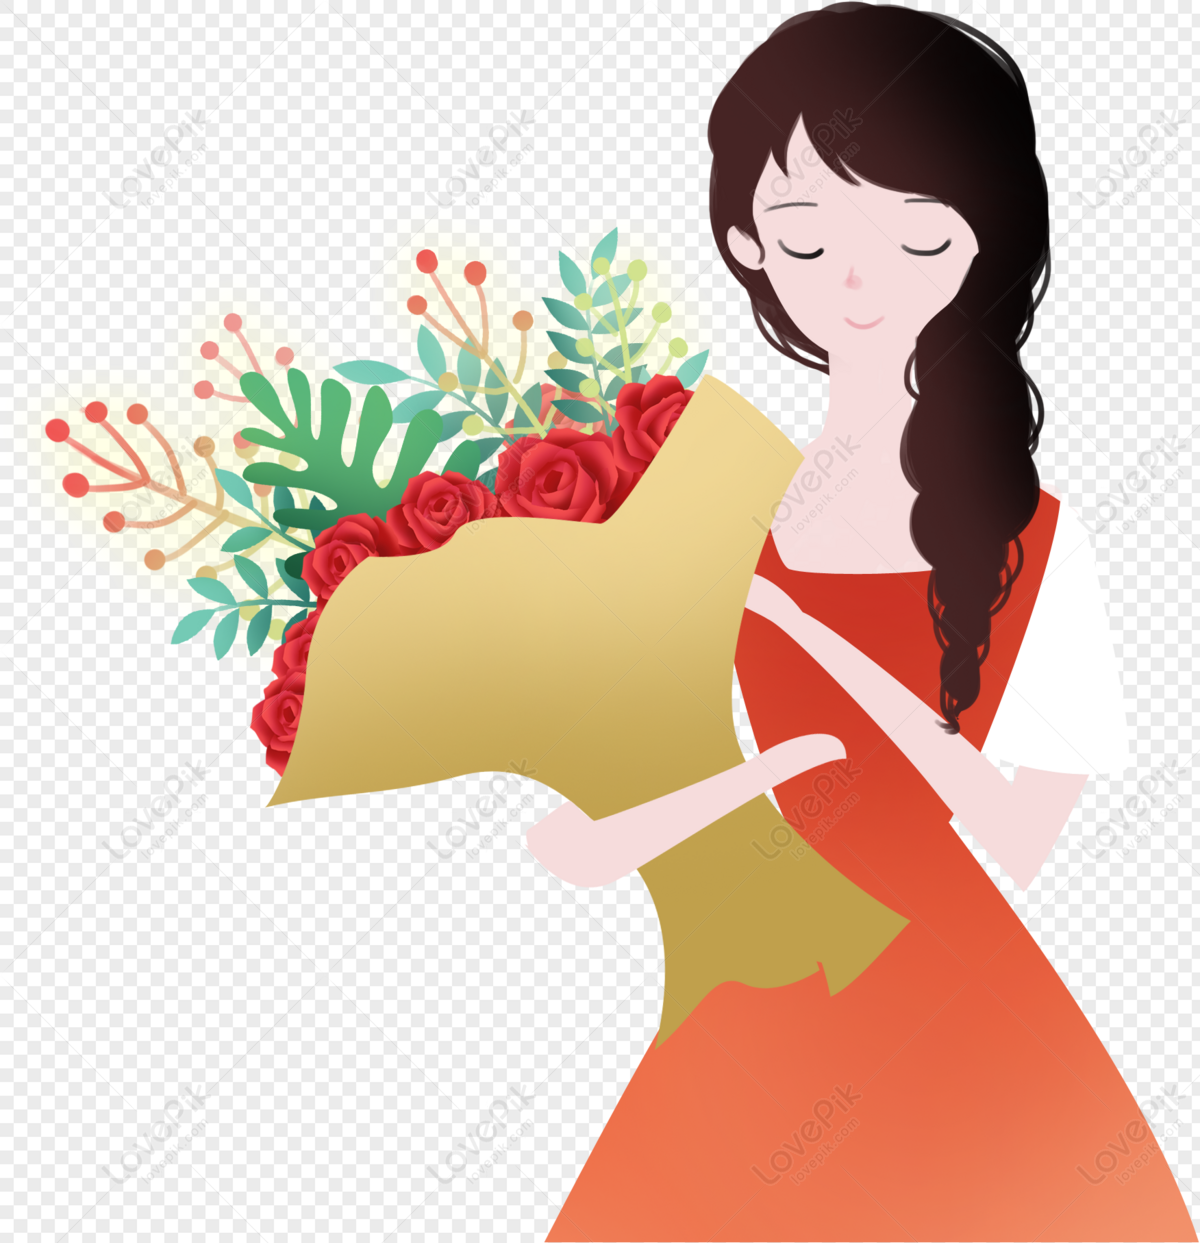 Bó hoa trinh nữ: Món quà tuyệt vời khiến bất kỳ ai cũng thích thú và hạnh phúc. Hãy chiêm ngưỡng những bó hoa trinh nữ lung linh, tinh tế trong hình ảnh dưới đây.